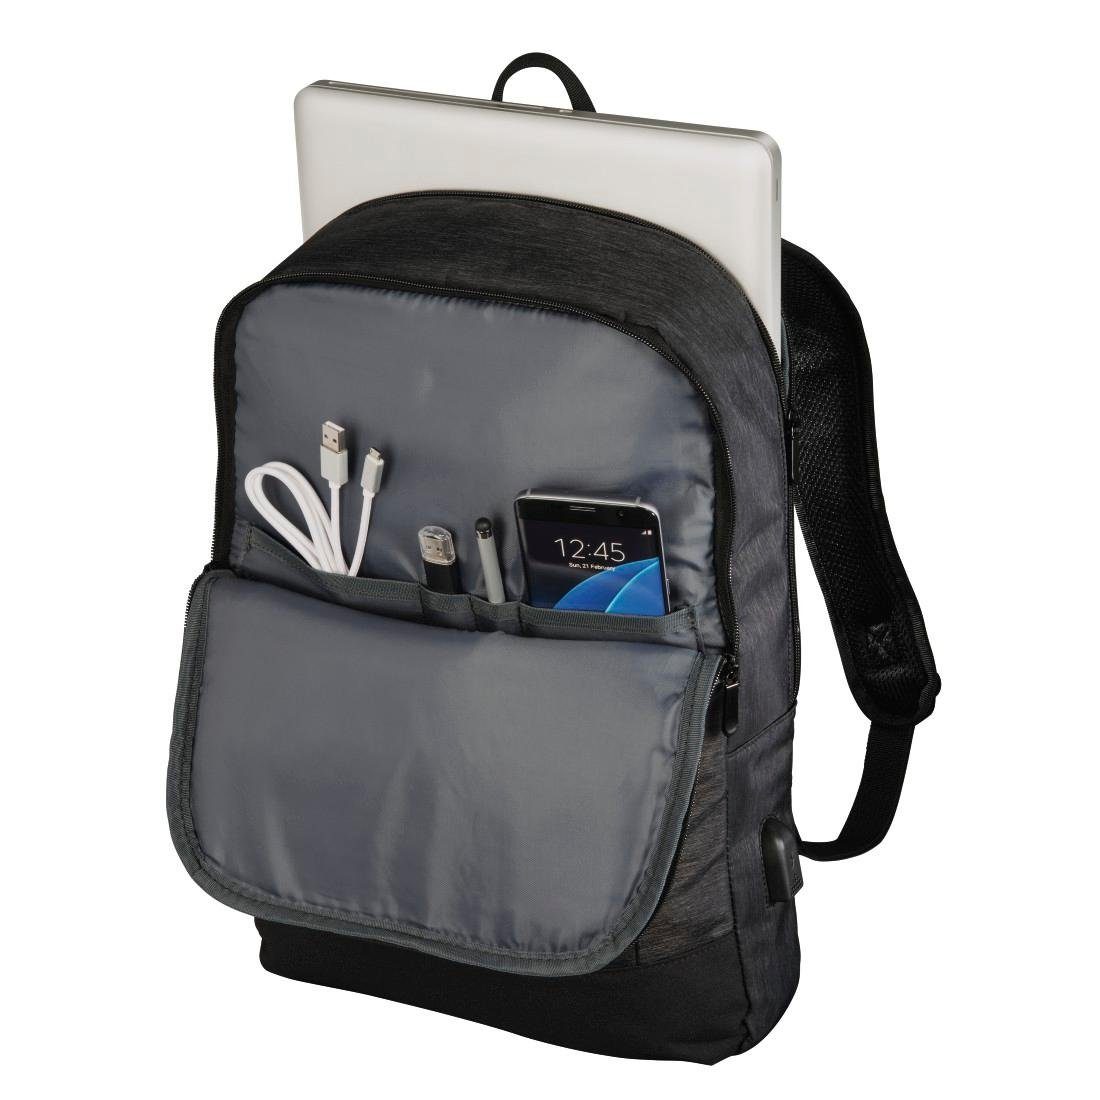 40cm Laptoptasche Notebook-Rucksack Manchester Hama bis 15,6"schwarz Laptop-Rucksack